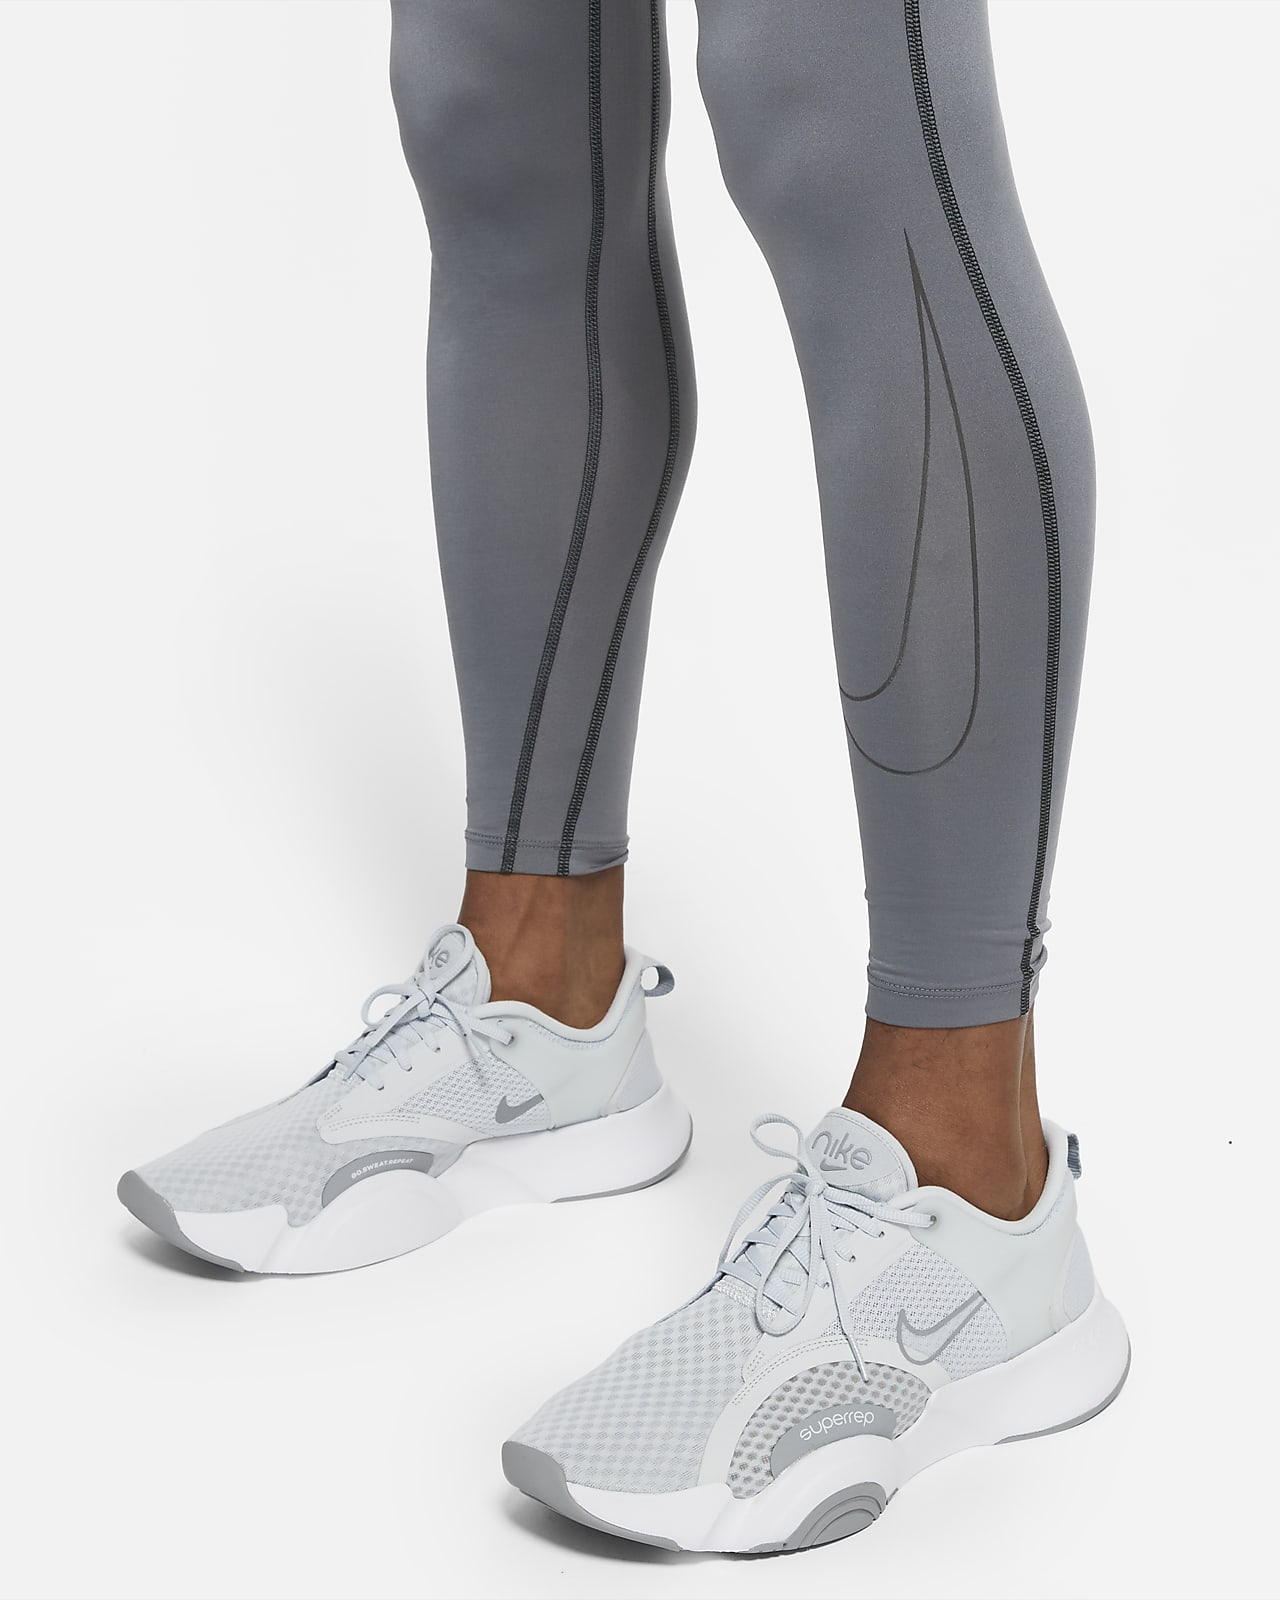 NIKE TRAINING Nike PRO - Débardeur Homme black/white - Private Sport Shop